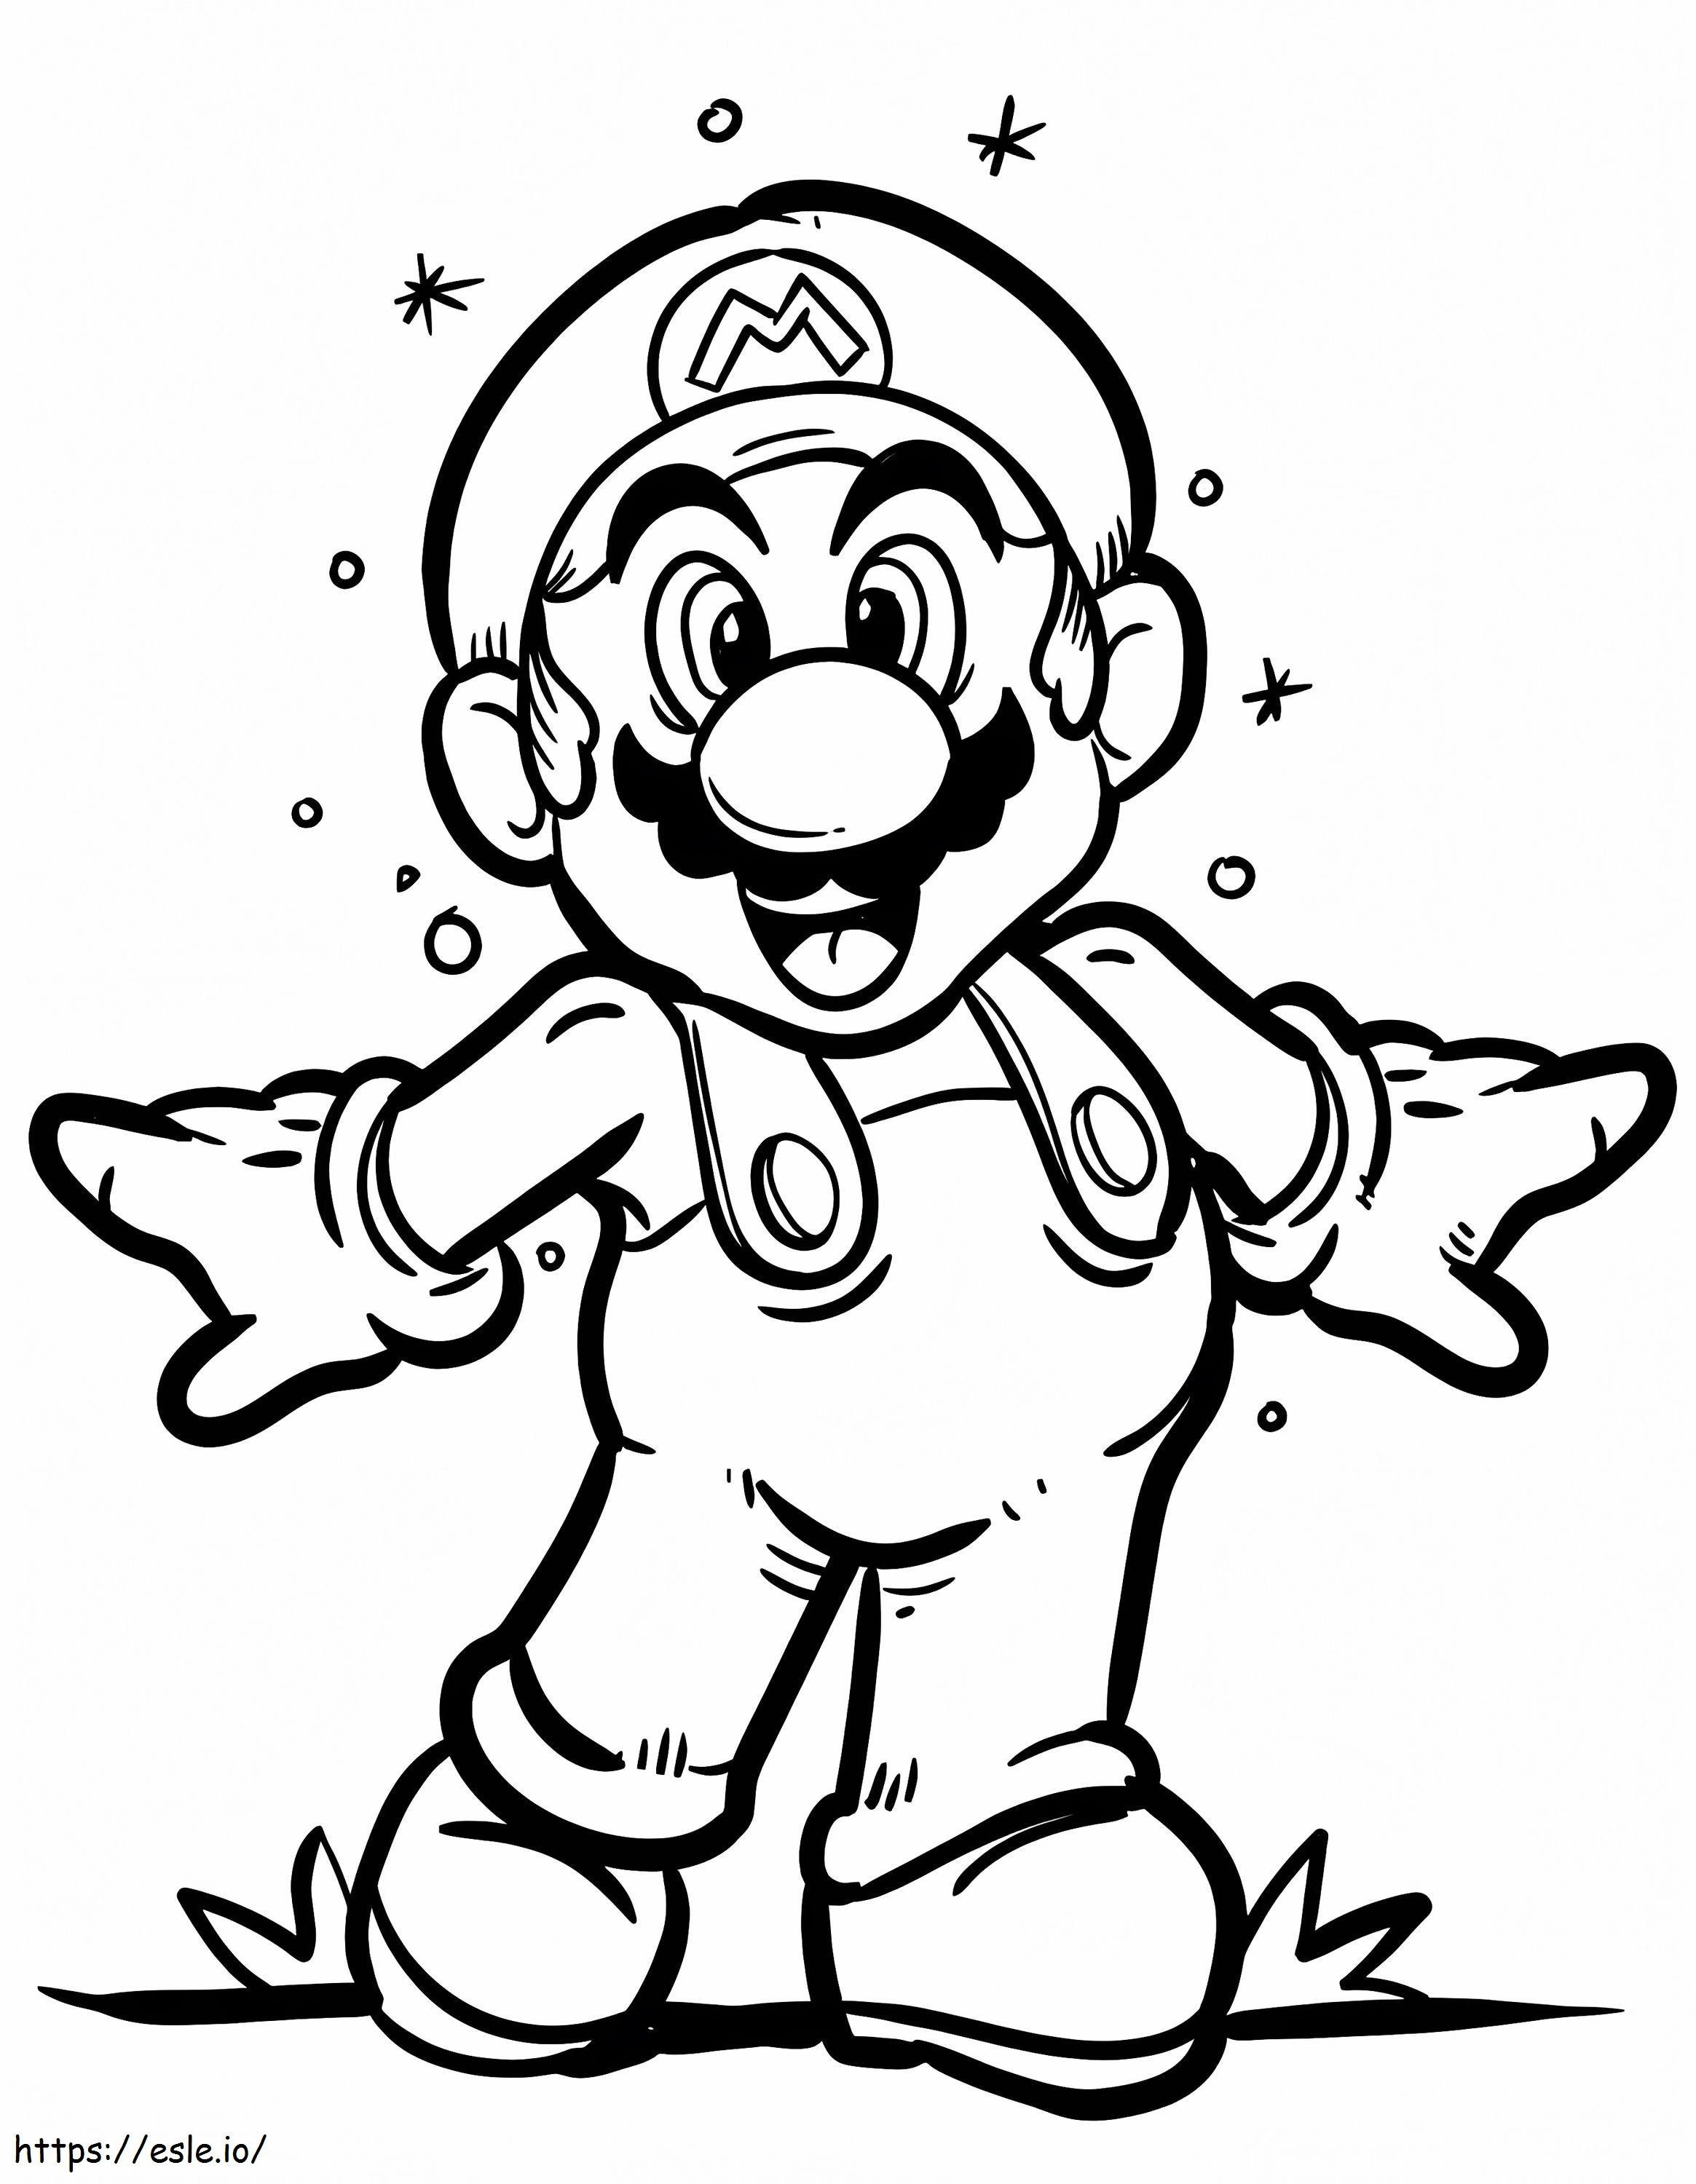 Buon Super Mario da colorare